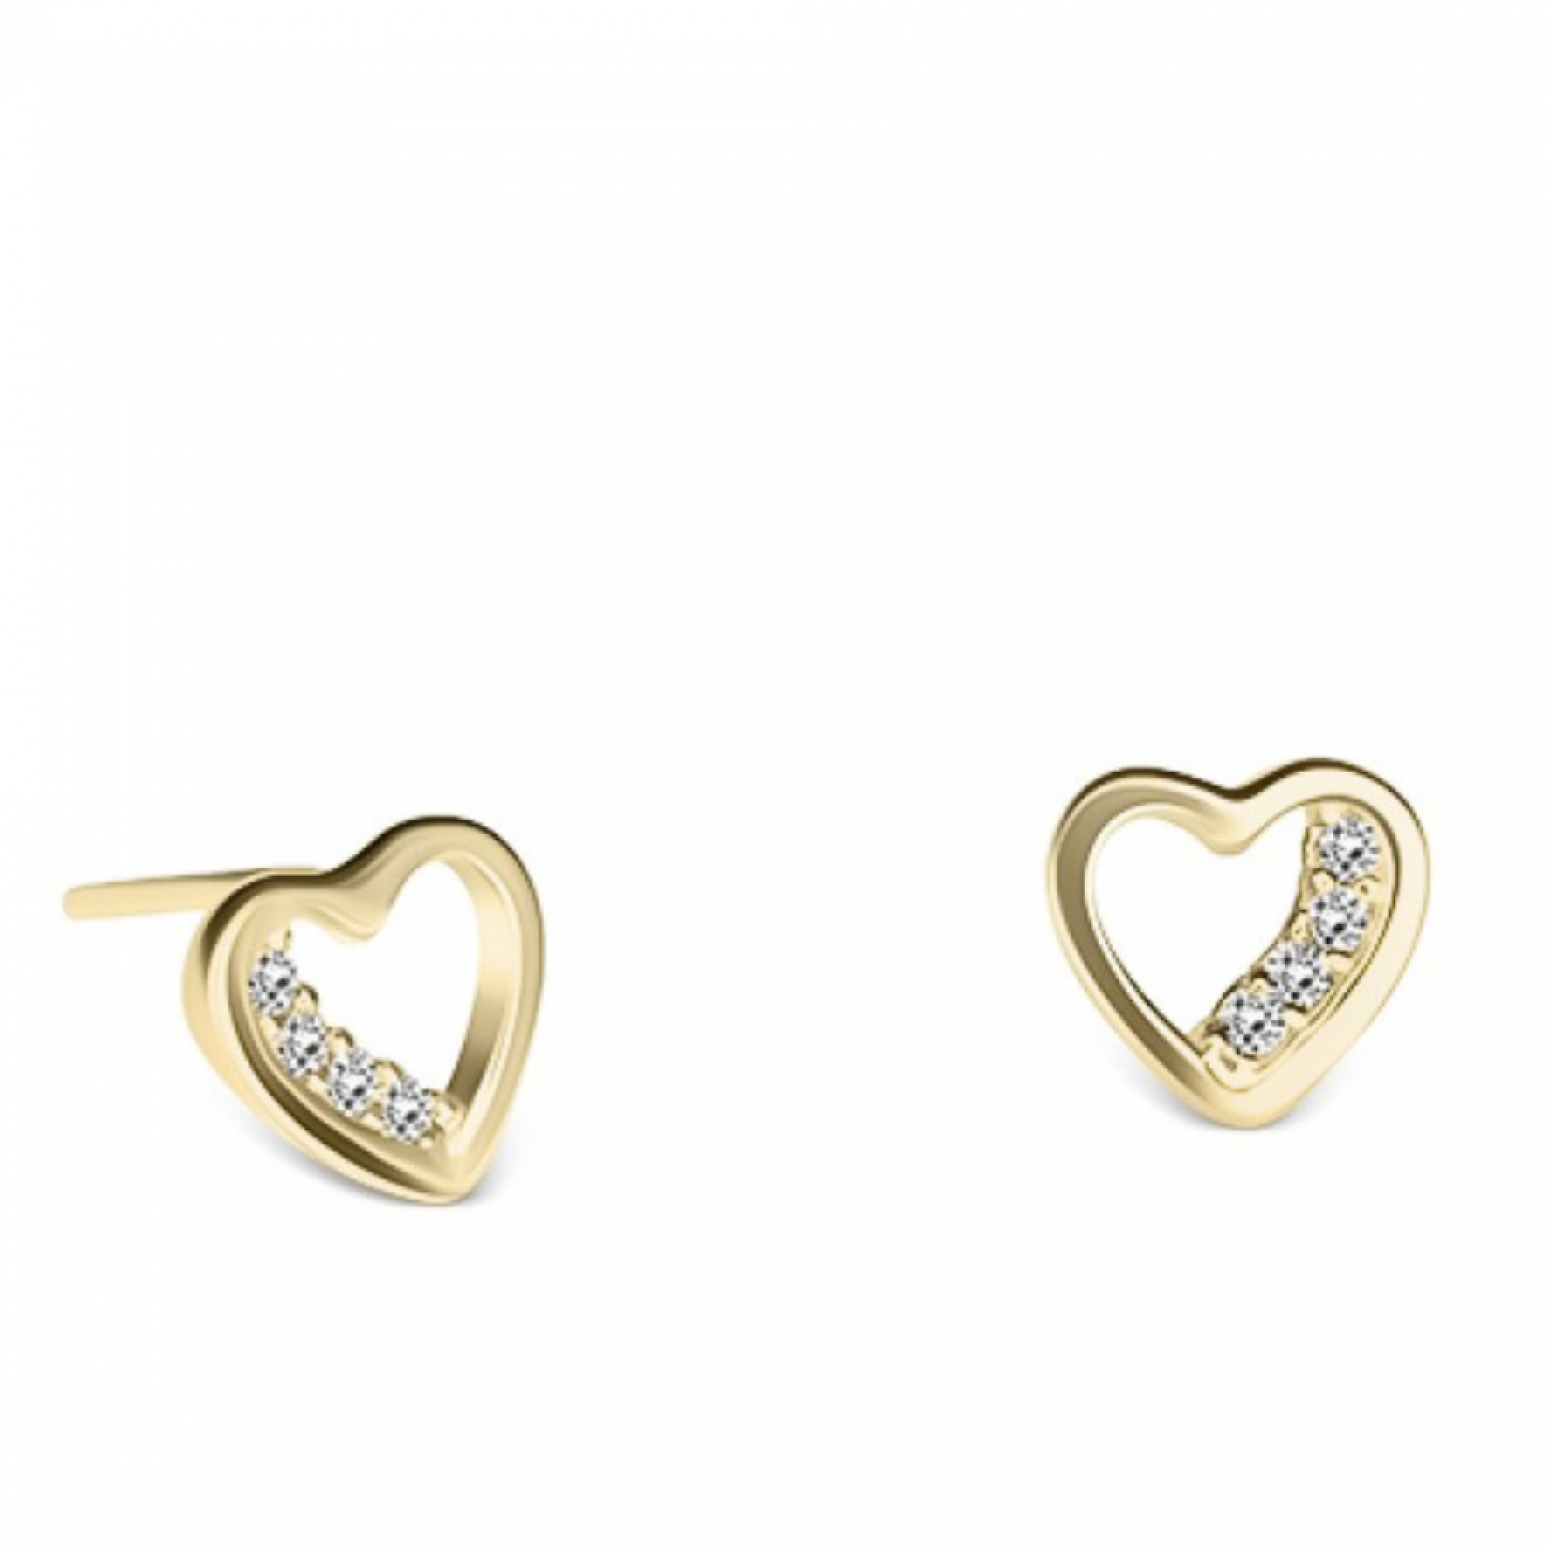 Heart earrings K14 gold with zircon, sk3931 EARRINGS Κοσμηματα - chrilia.gr